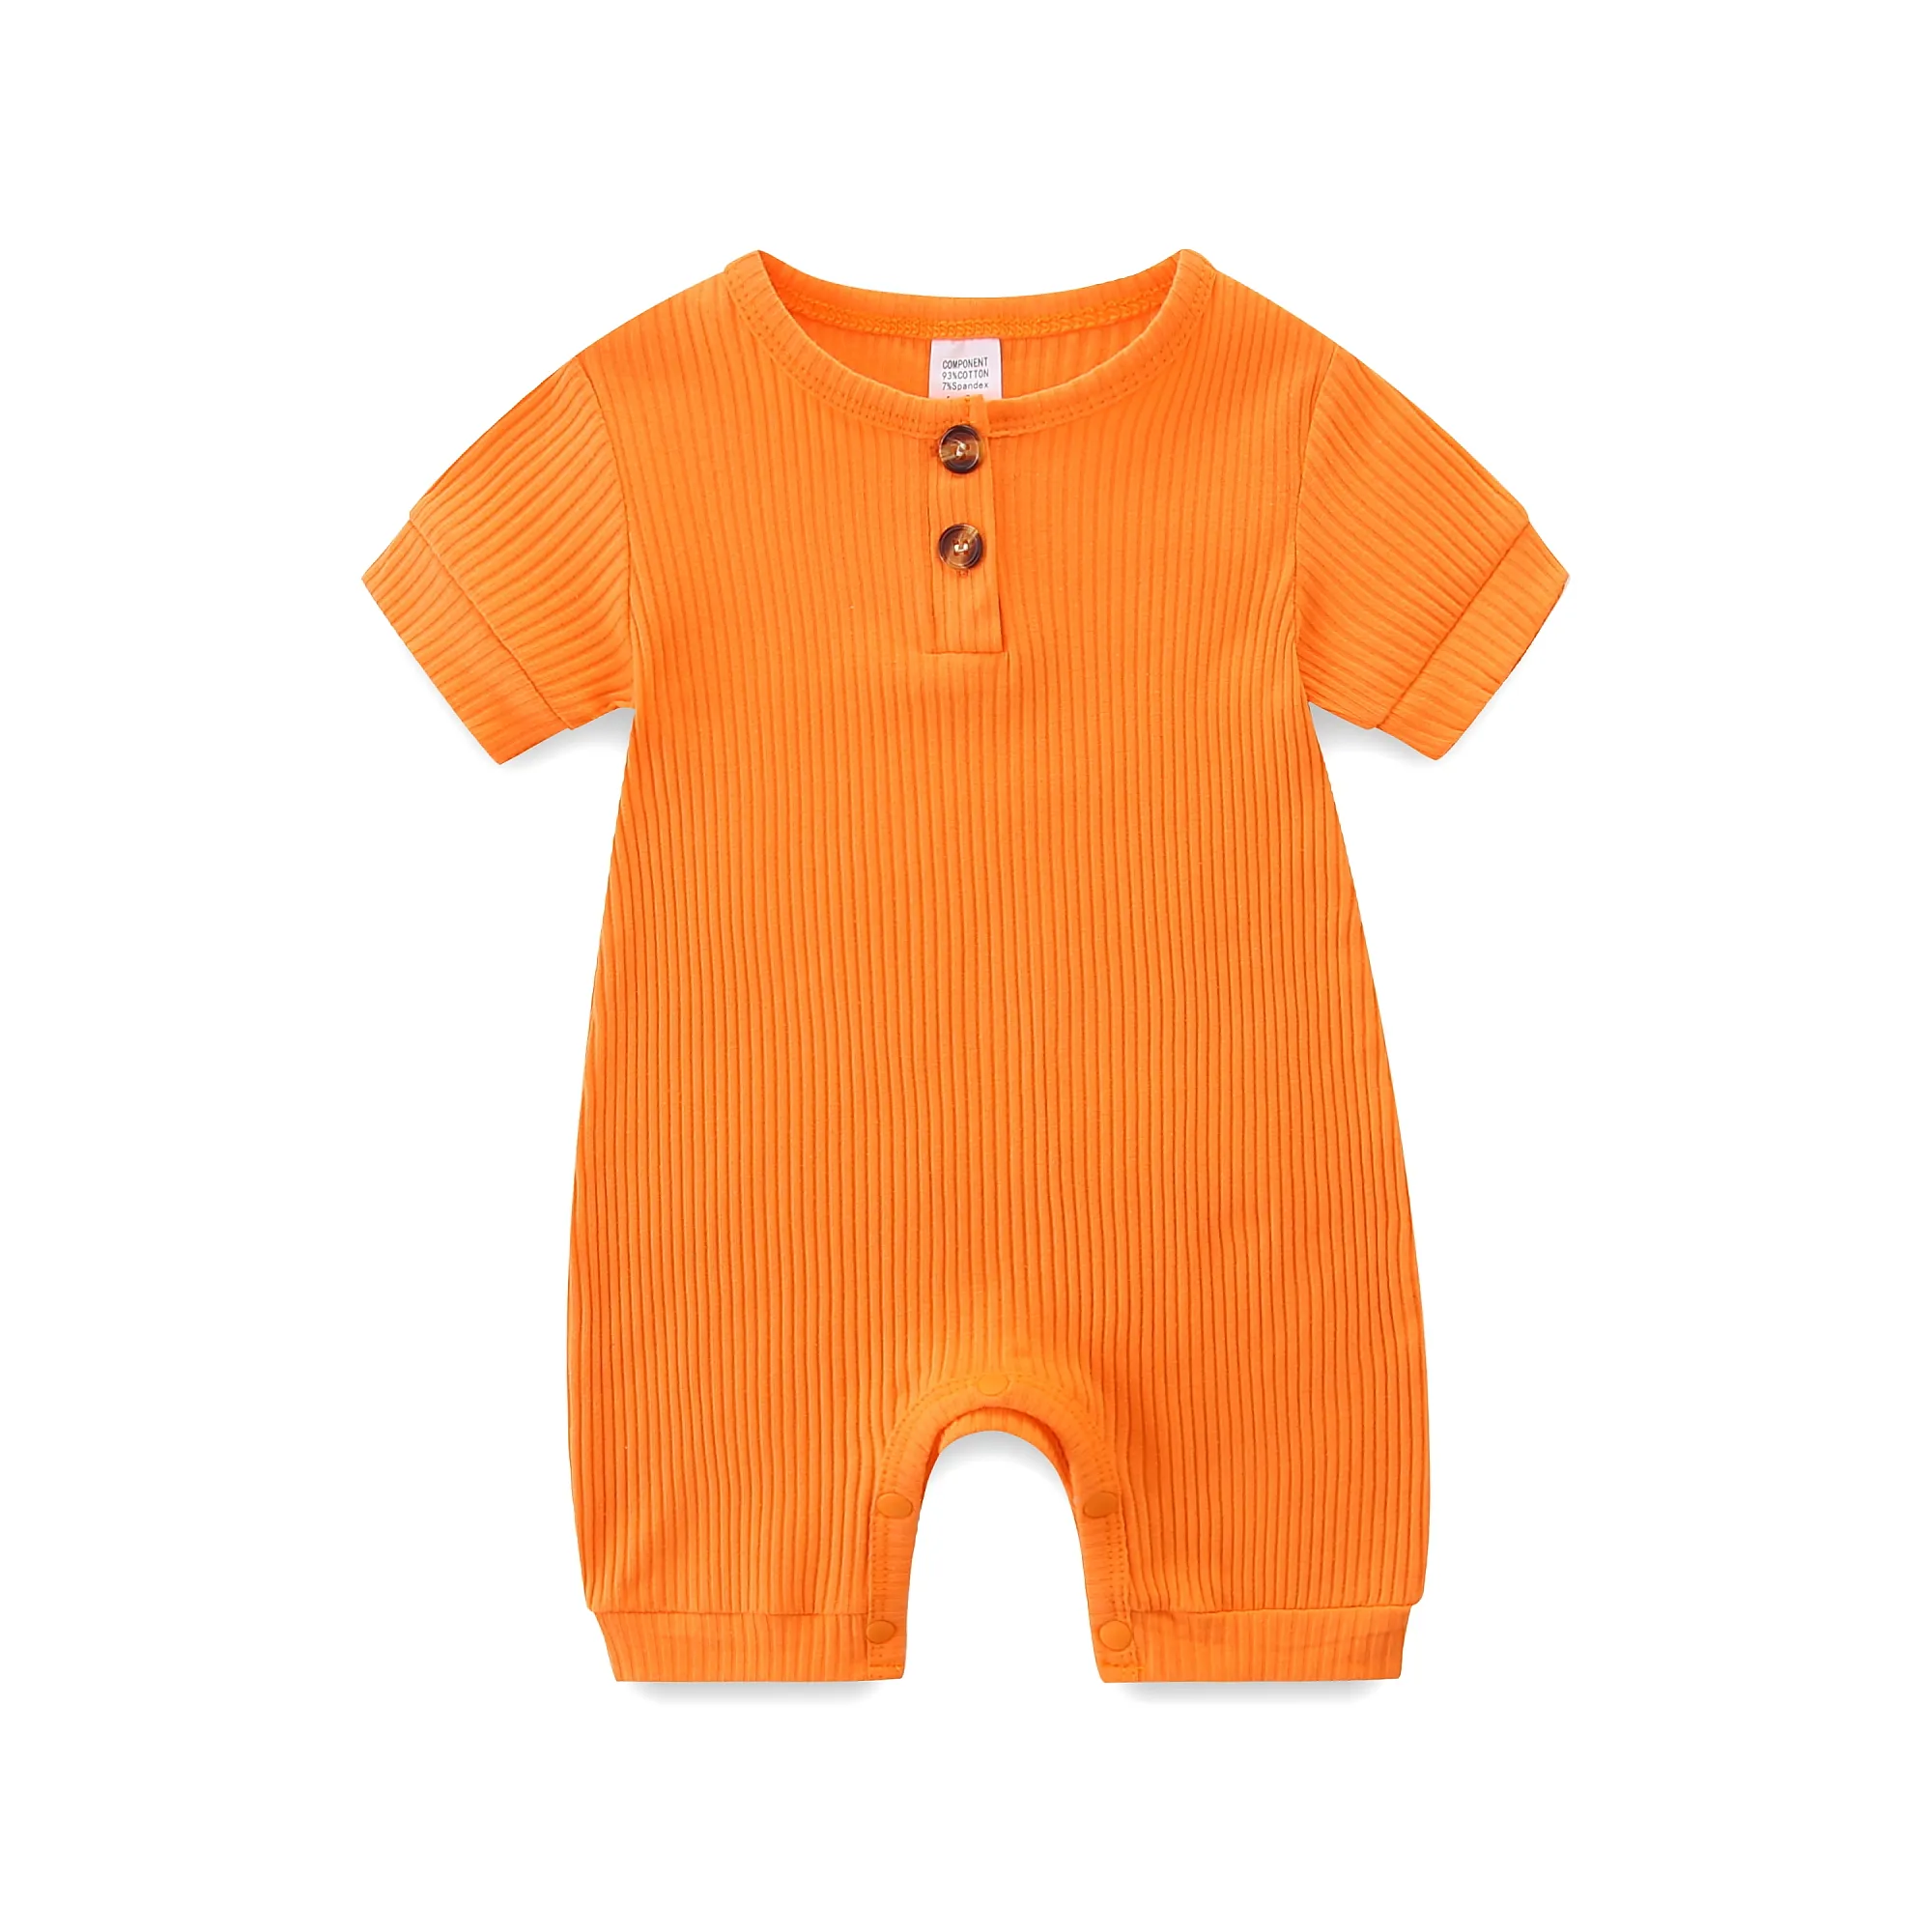 हॉट सेल बेबी कपड़े ग्रीष्मकालीन बच्चों के लिए सॉलिड कलर स्ट्रीक बॉडीसूट 0-12 महीने के नवजात शिशु के लिए उच्च गुणवत्ता वाले बच्चों के लिए छोटी आस्तीन वाला रोम्पर